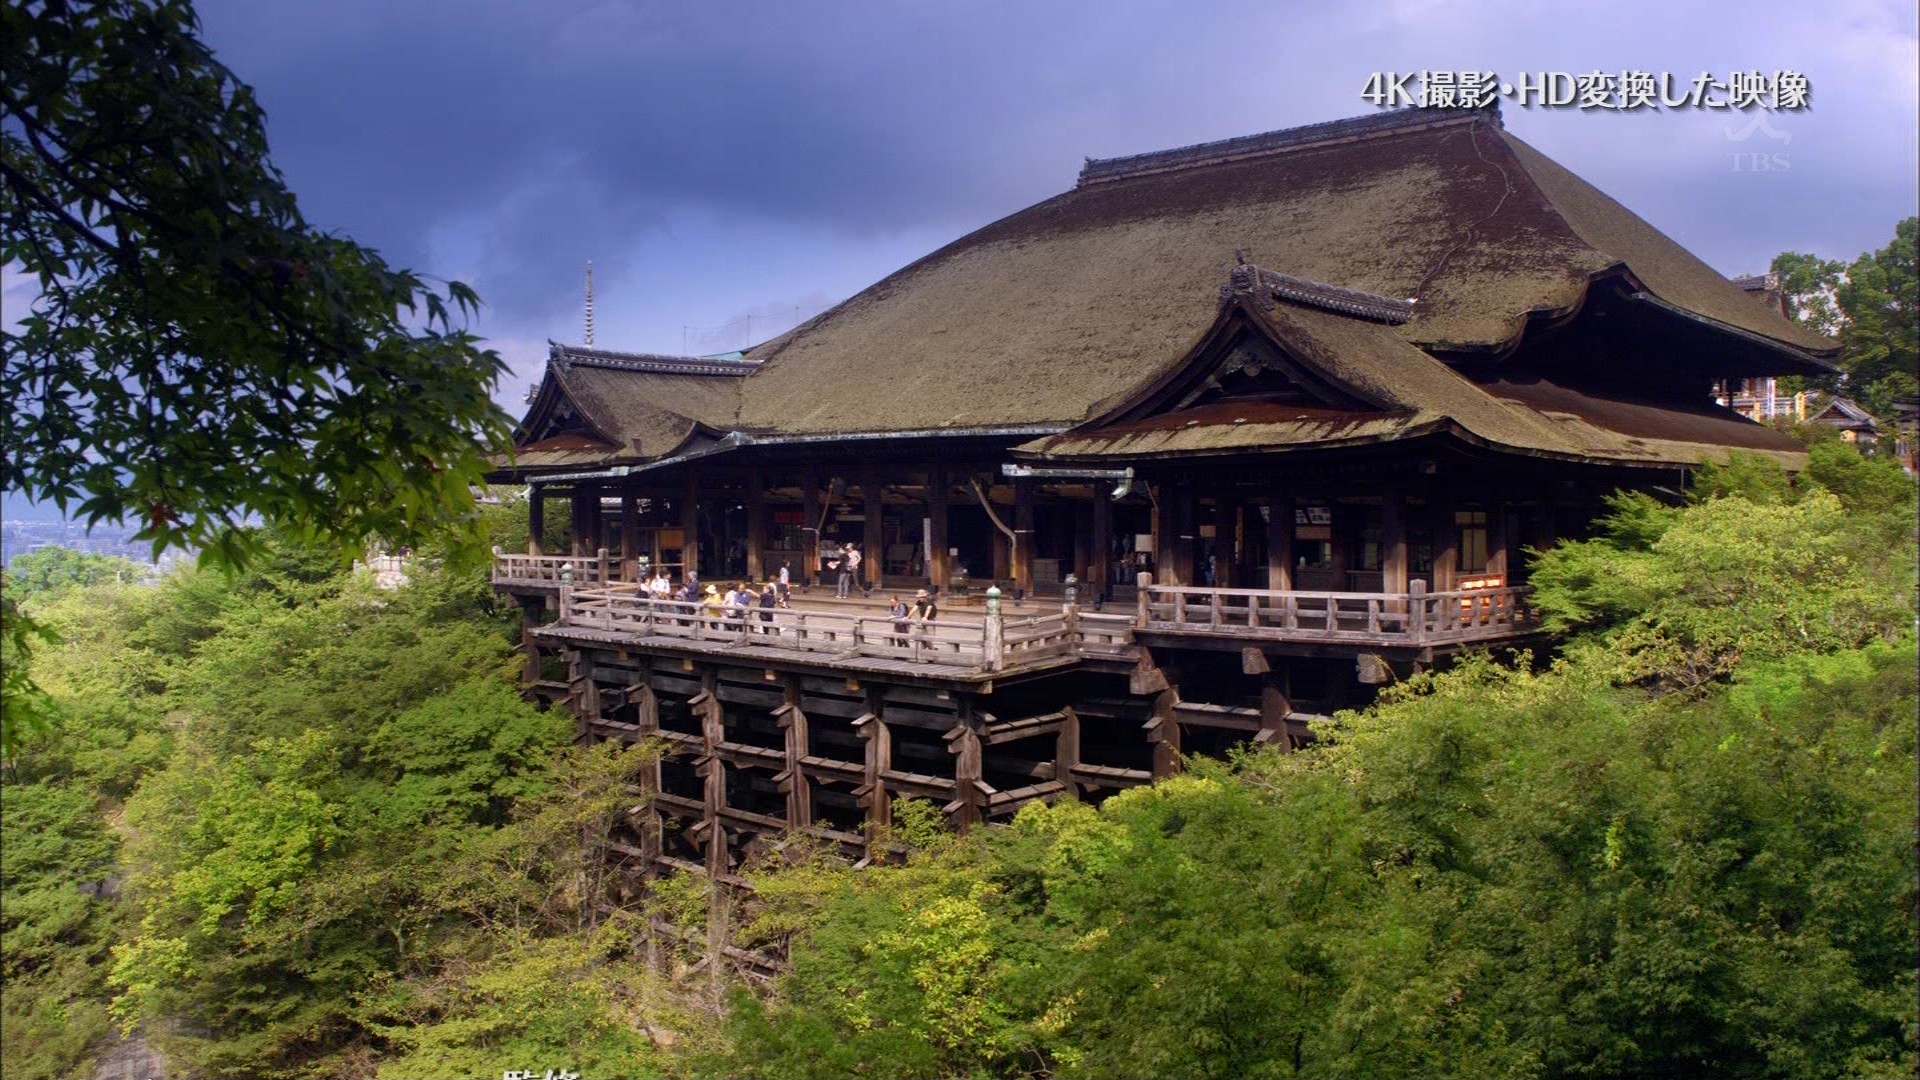 The世界遺産 千年の都を支えた水の秘密 古都京都の文化財 日本 こんなテレビを見た